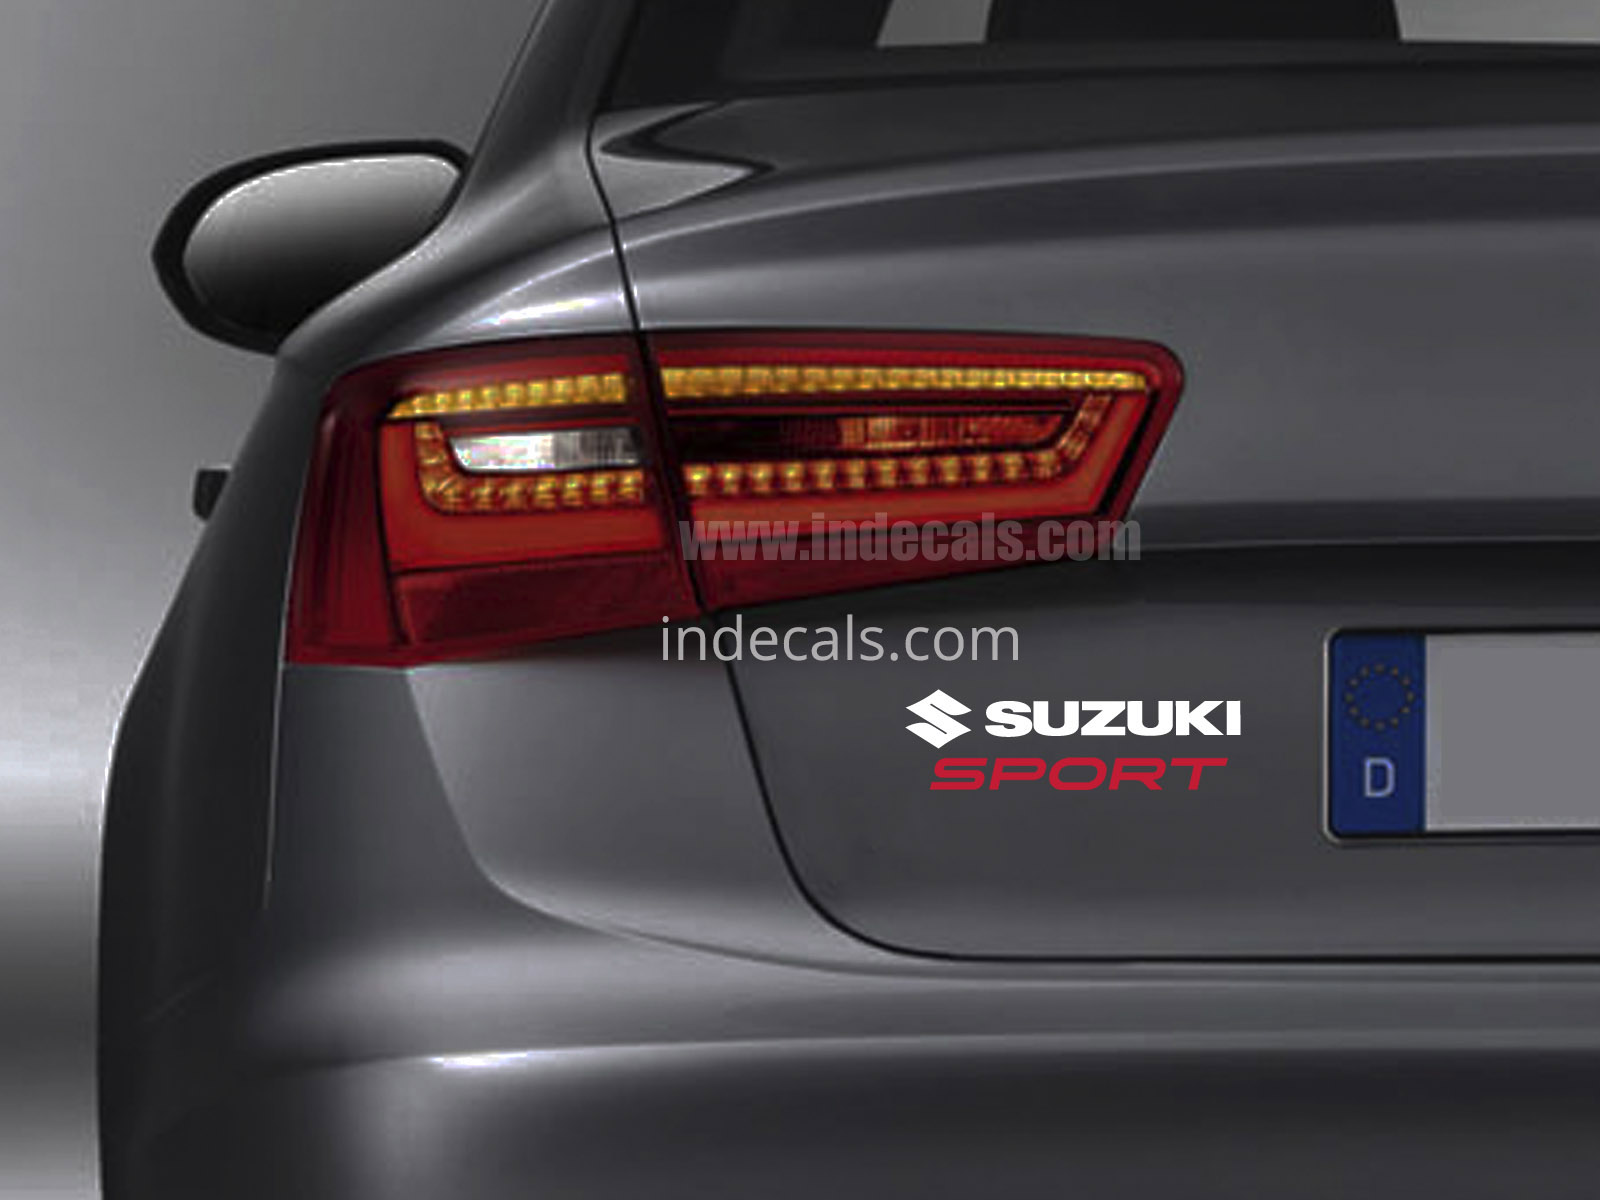 1 x Suzuki Sports Sticker for Trunk - White & Red